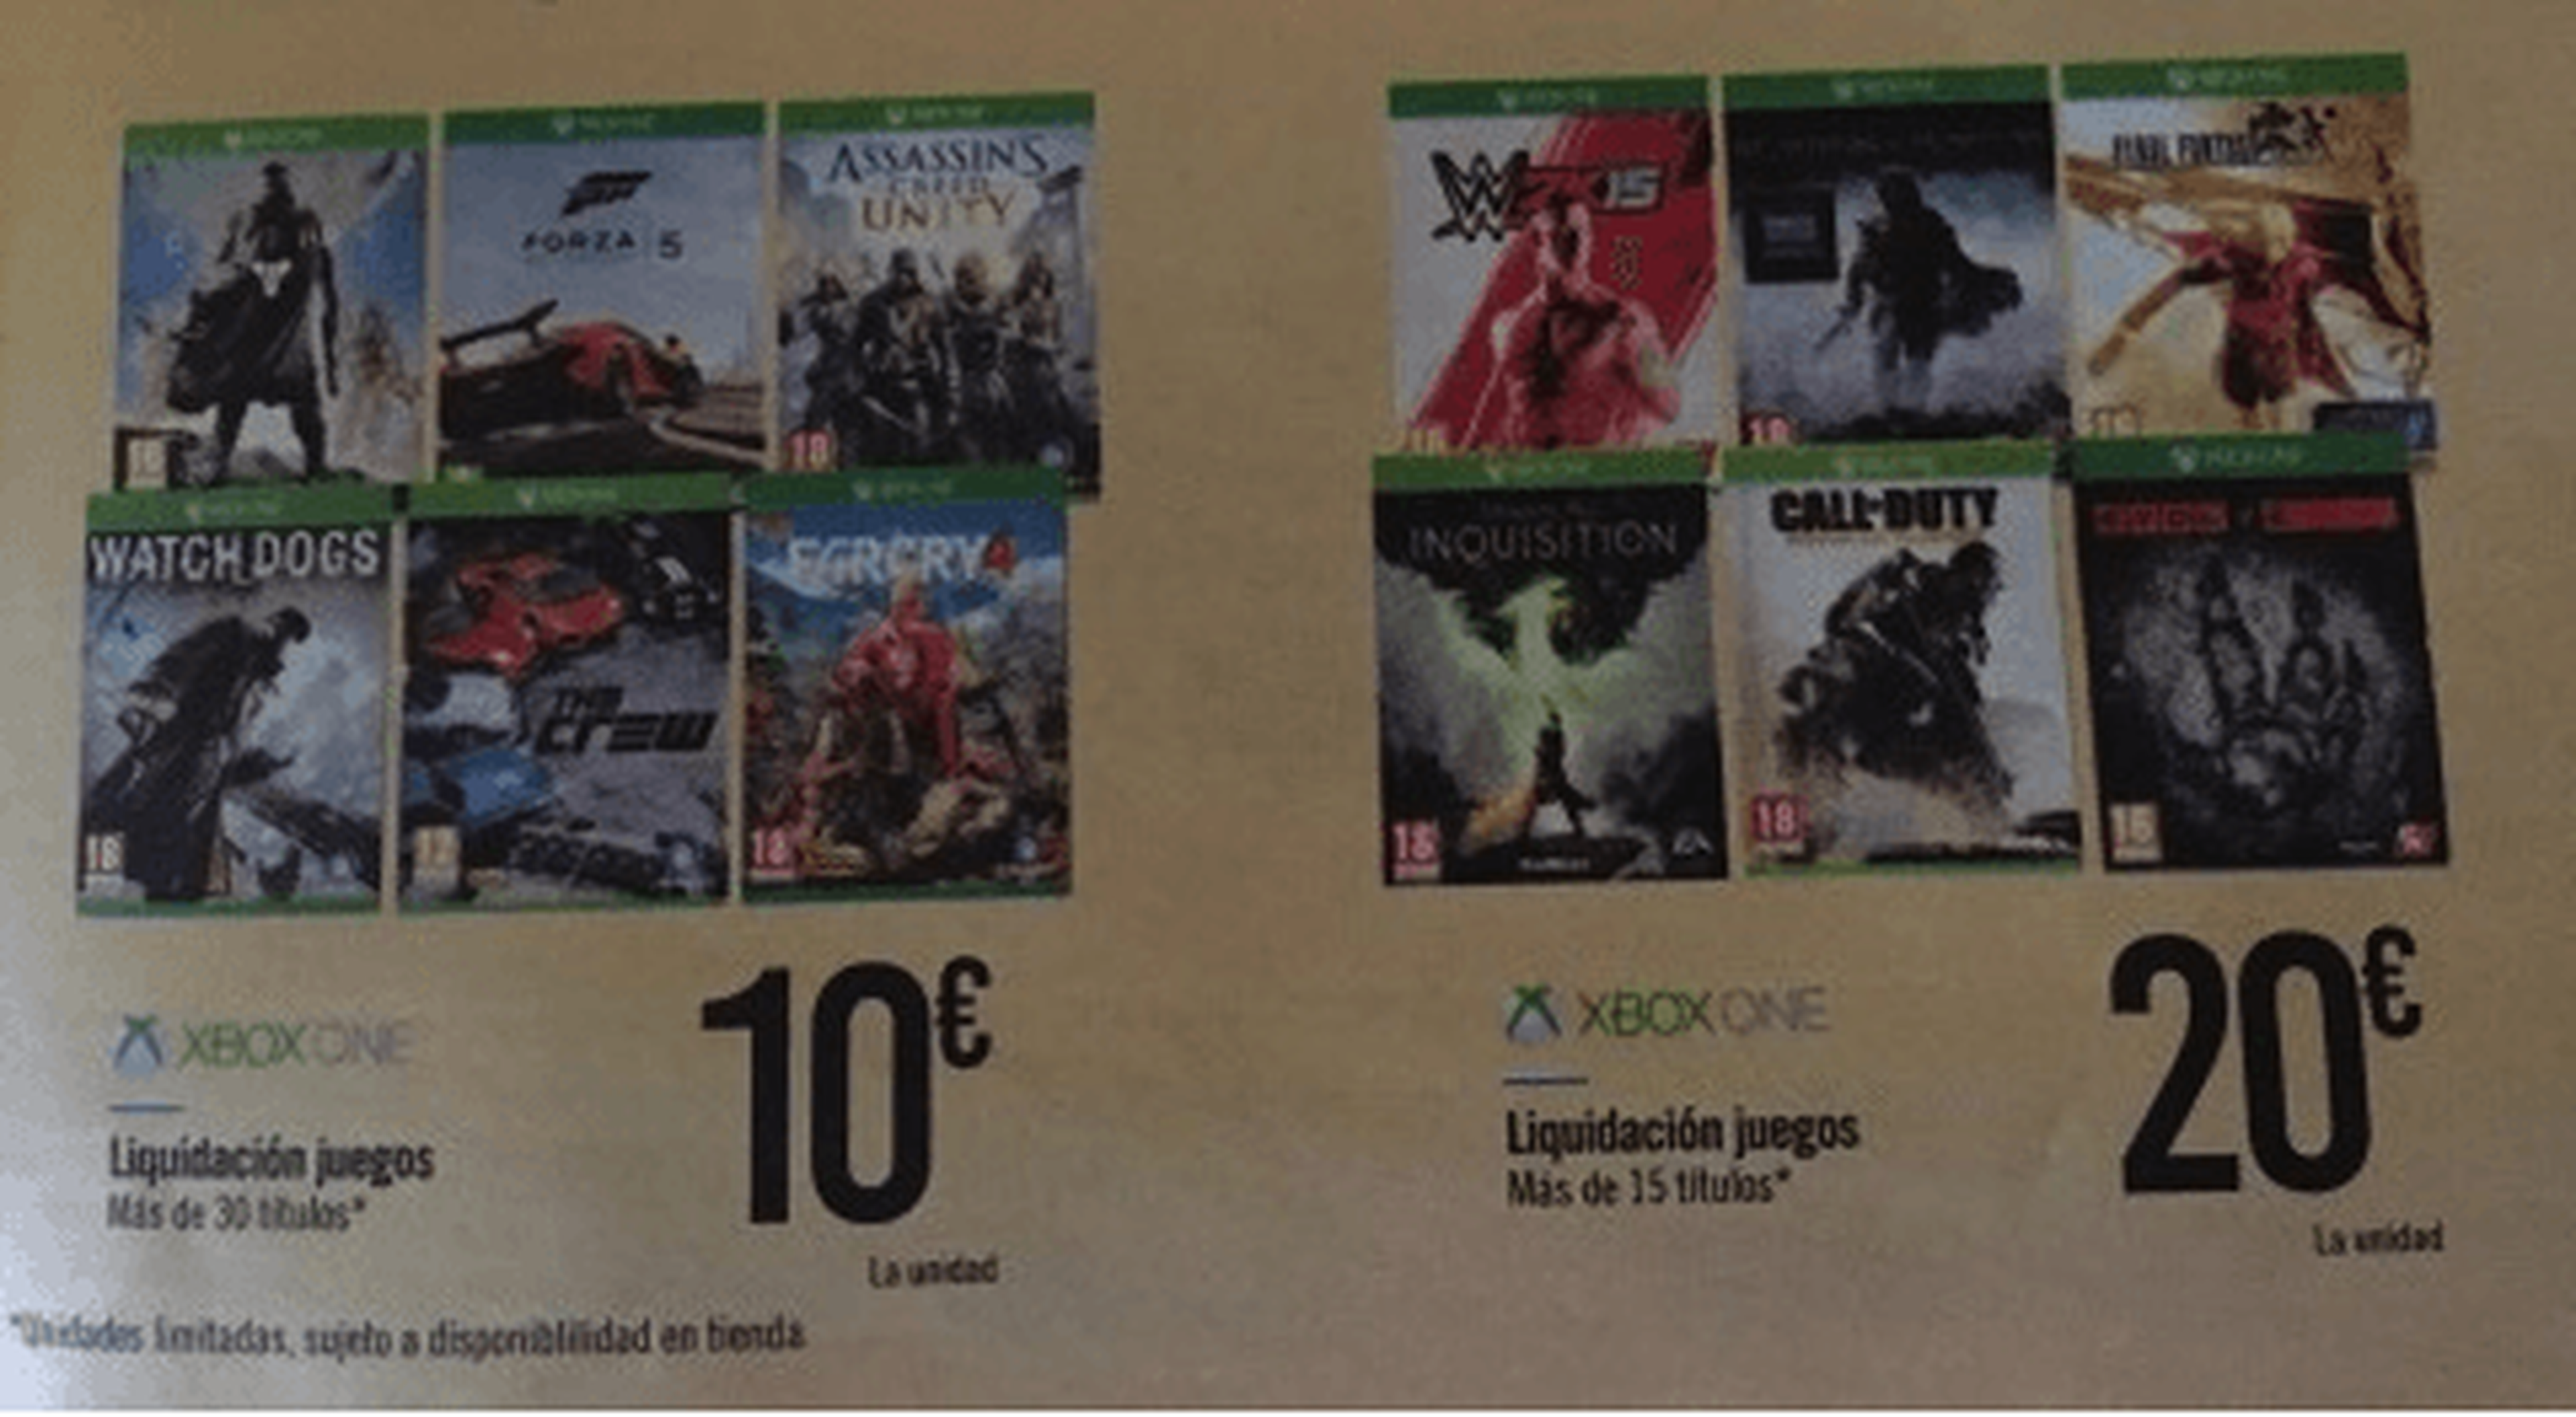 Juegos de Xbox One a 10€ y 20€ por liquidación en Carrefour.